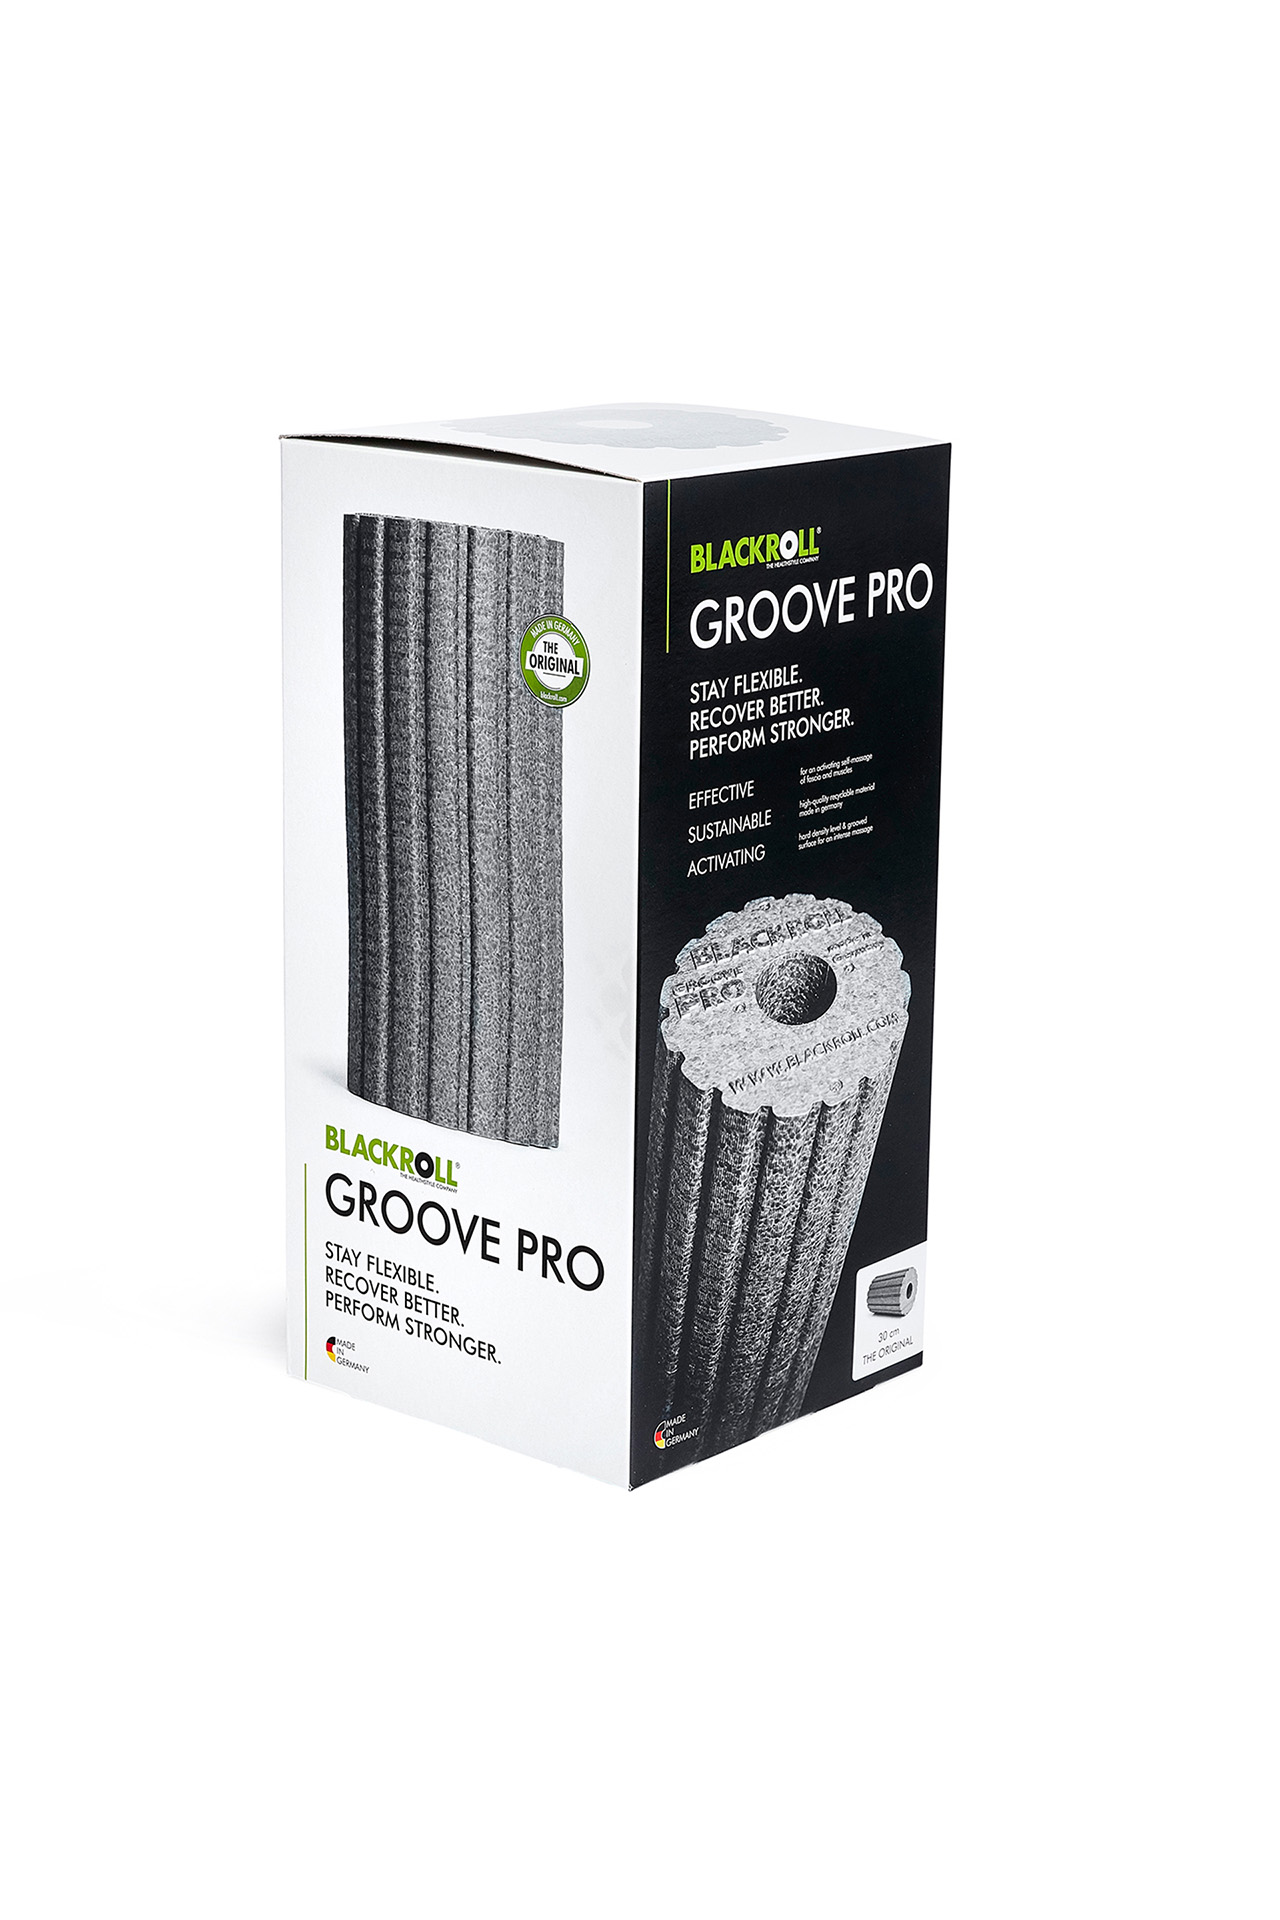 blackroll groove pro grau grey rolle fengbao kung fu shop 1080 wien verpackung